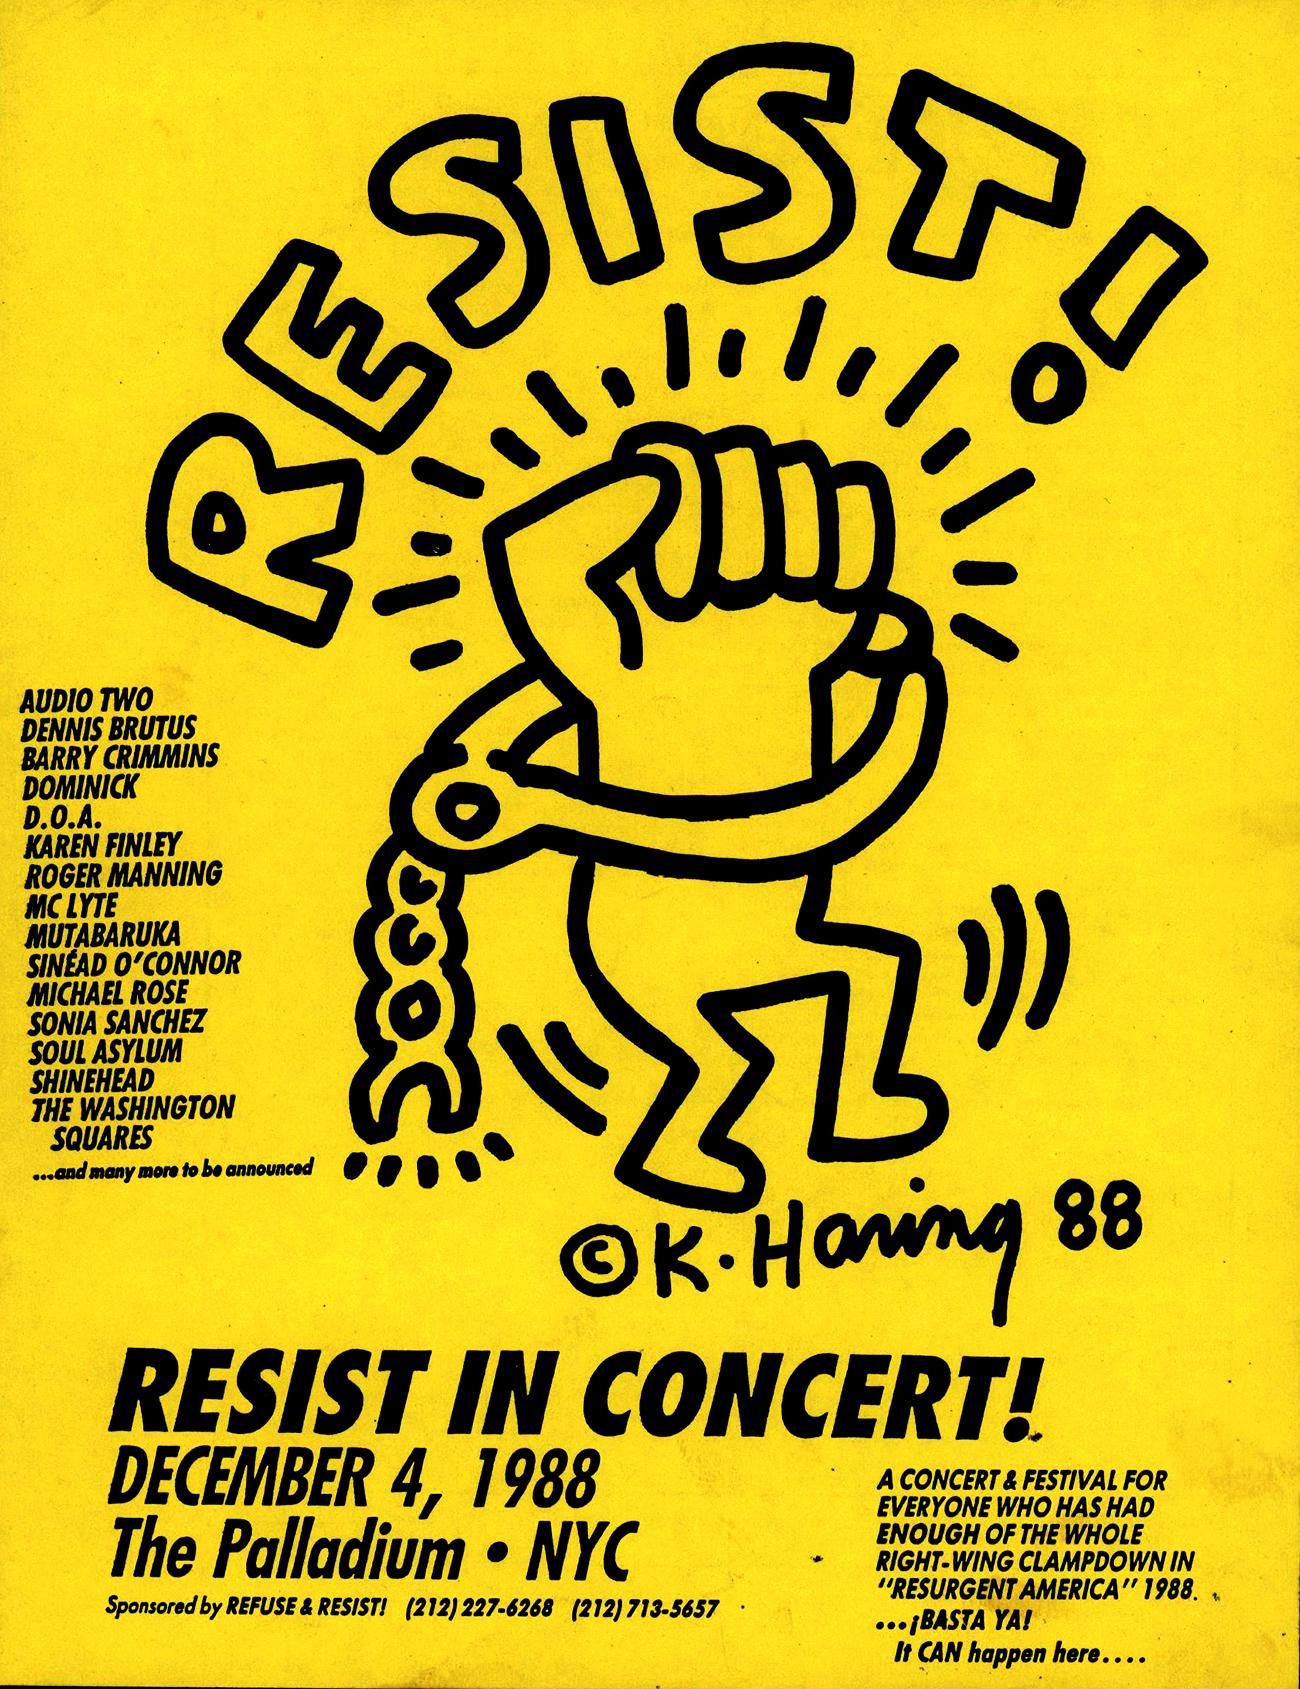 Keith Haring Resist en concert ! 1988 : 
Affiche vintage de 1988 illustrée par Keith Haring pour un concert produit par Refuse and Resist le 4 décembre 1988 au Palladium nightclub de New York. Une rare affiche d'activiste de Haring produite du